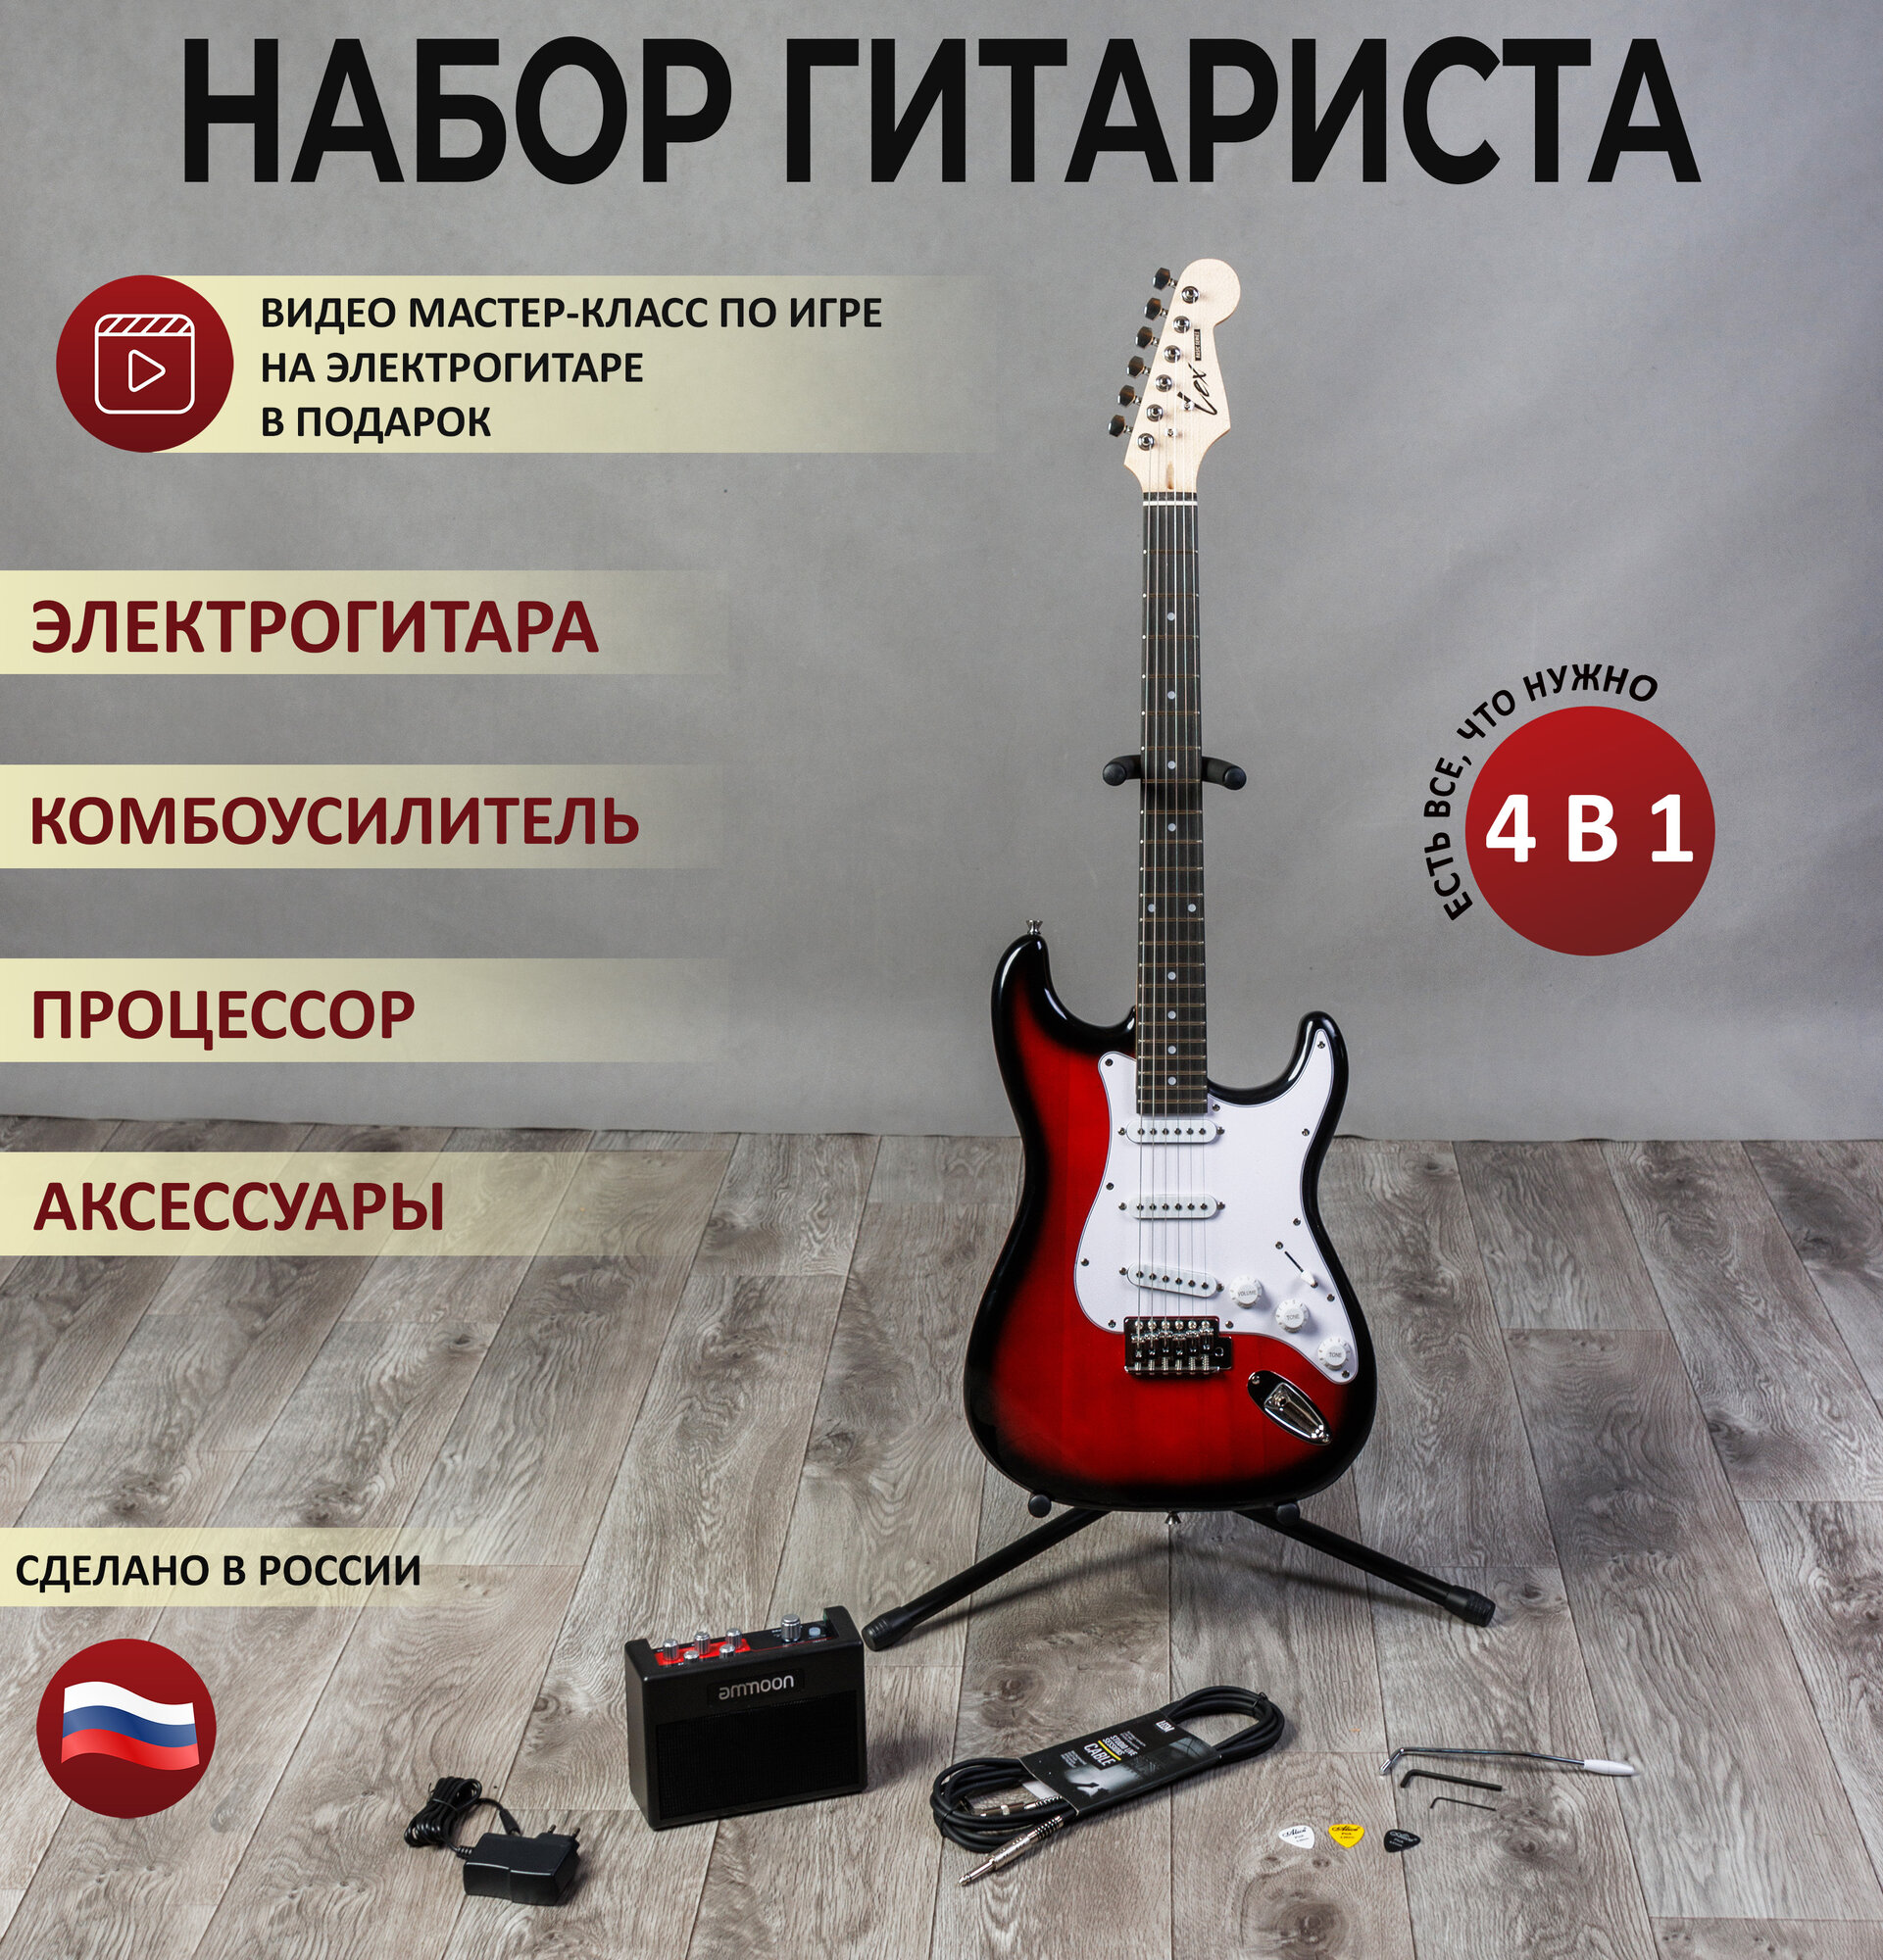 Электрогитара LEX набор гитариста 4 в 1 (электрогитара, комбоусилитель, провод, медиаторы)